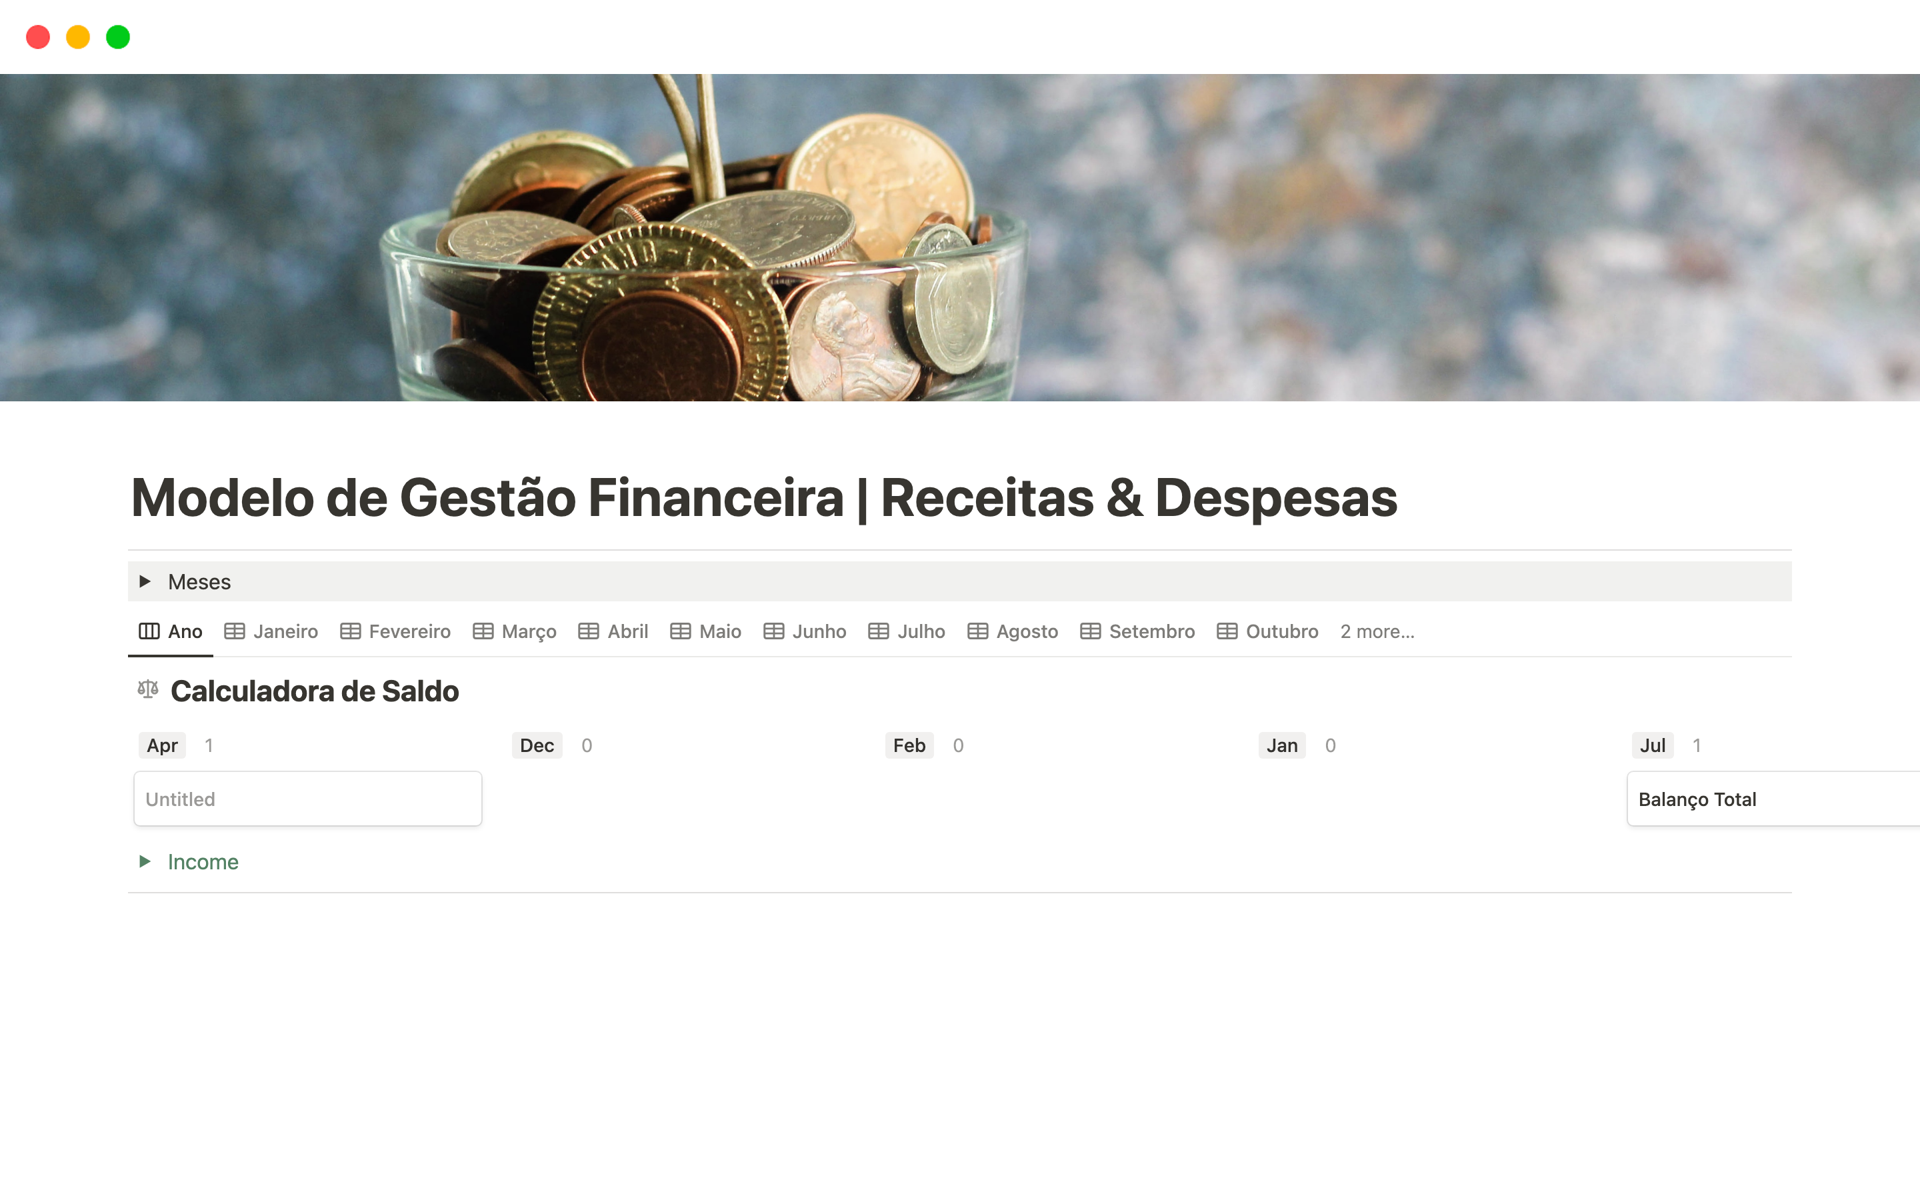 Modelo de Gestão Financeira | Receitas & Despesasのテンプレートのプレビュー